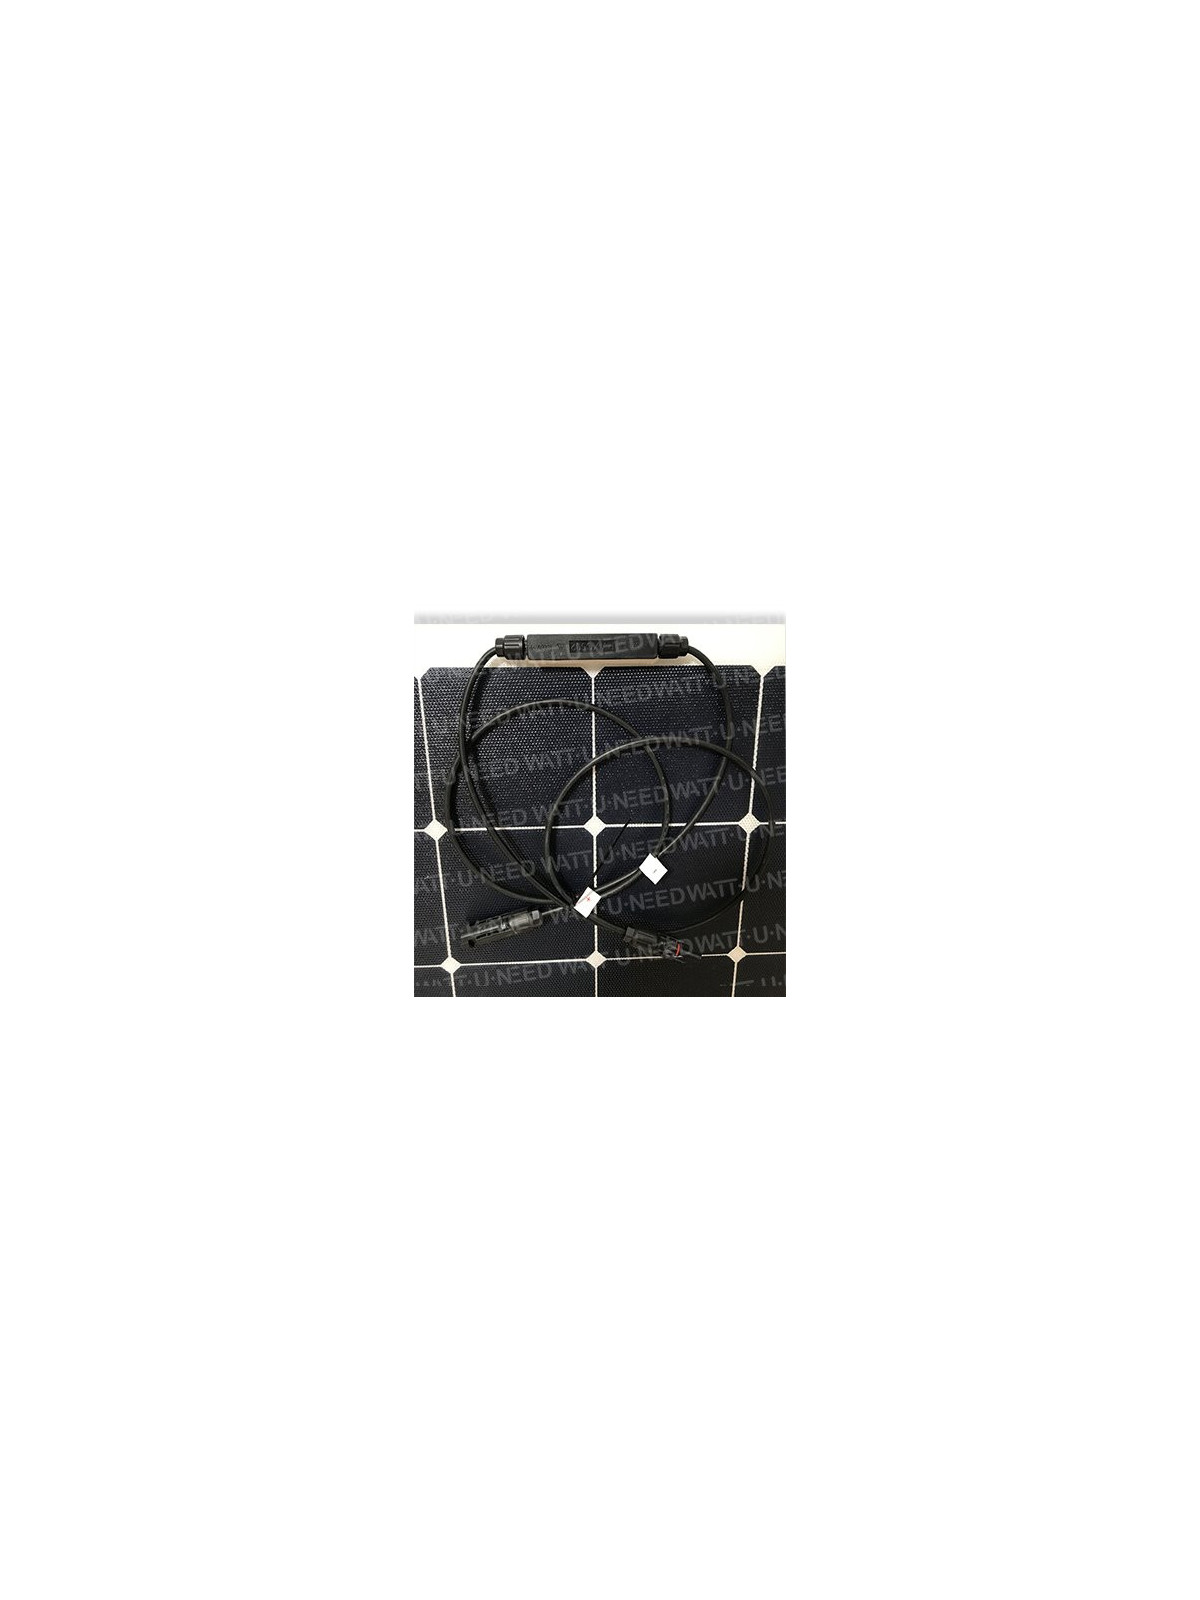 MX FLEX 140 Wp solar panel